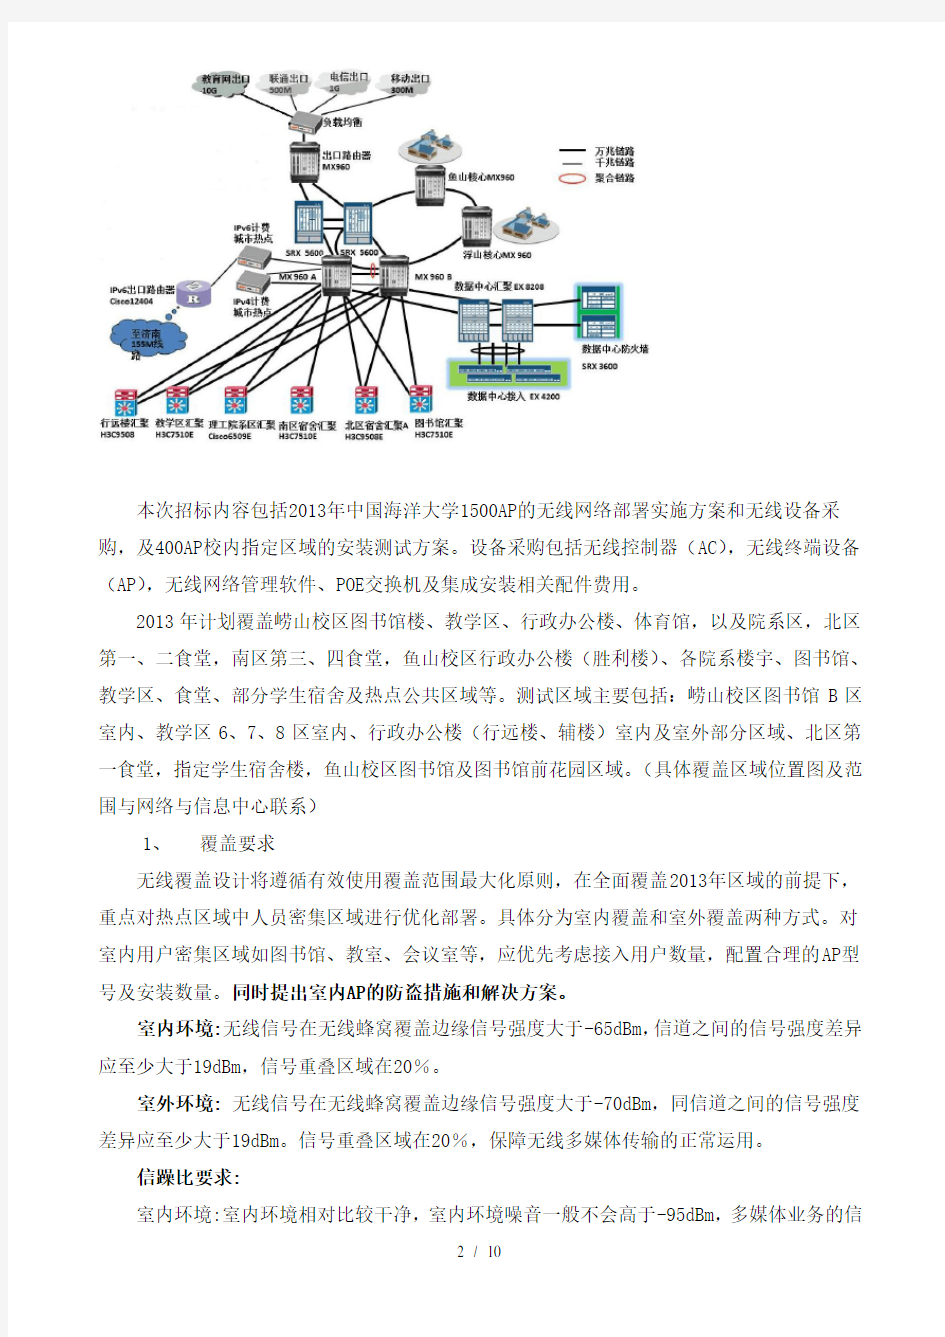 招标中心中国海洋大学招投标管理信息系统